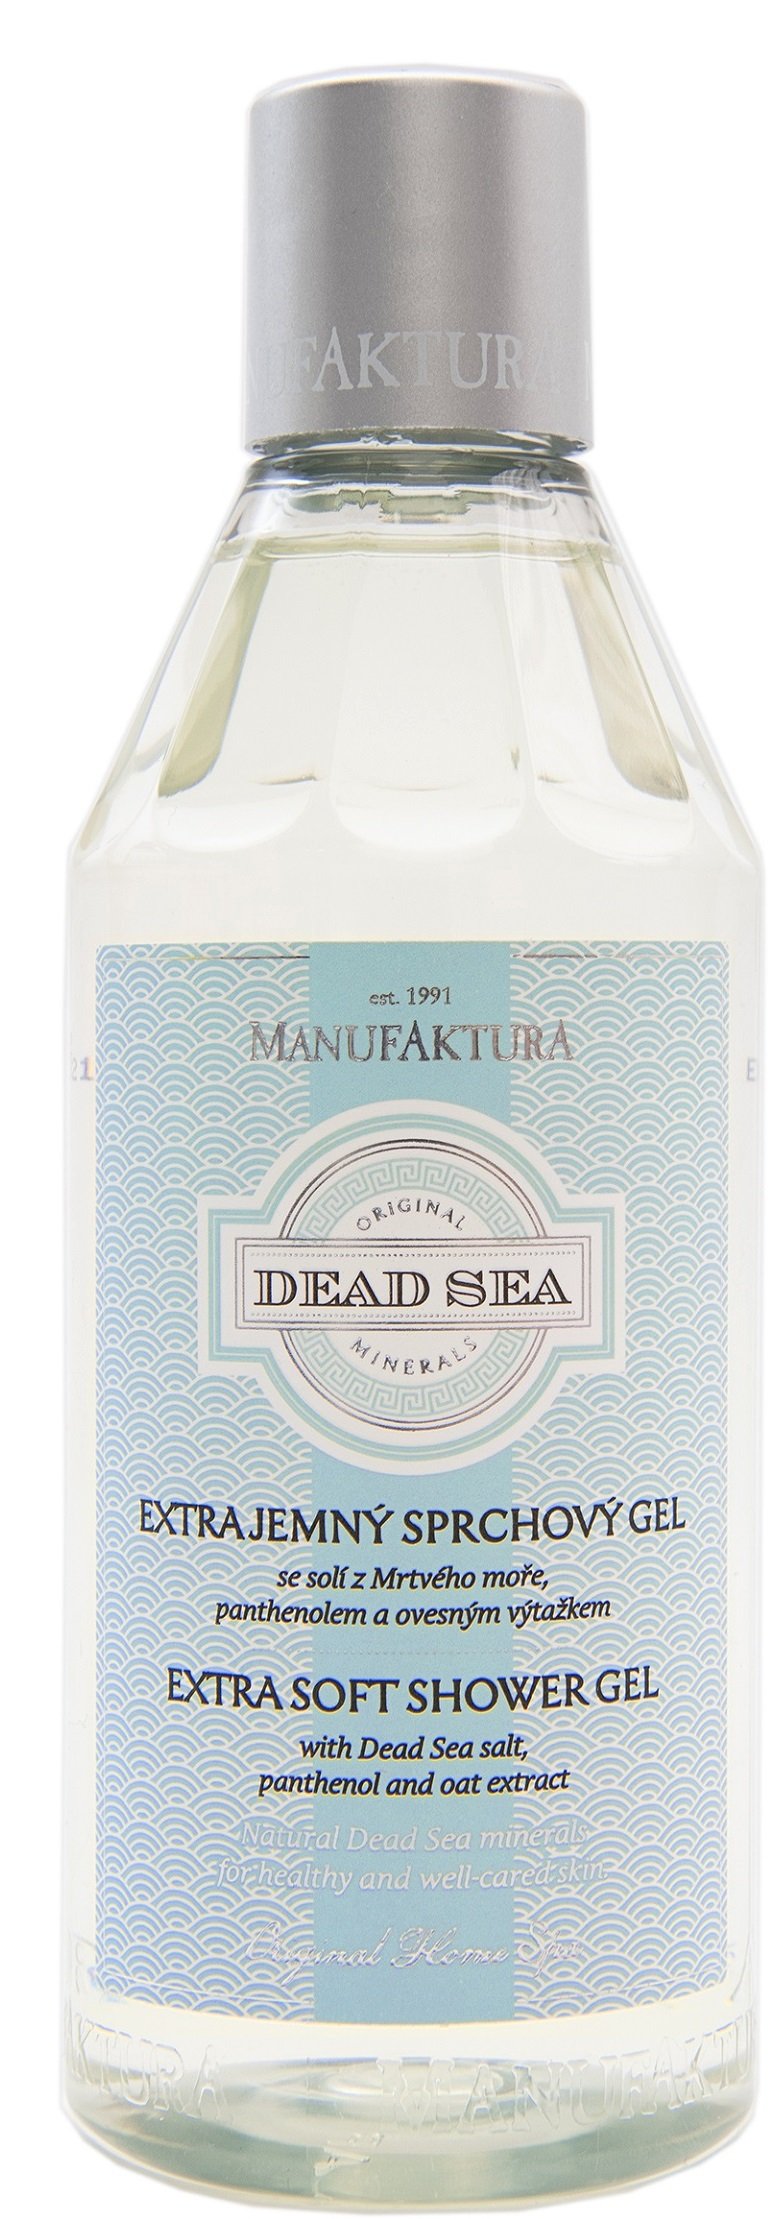 Extra jemný sprchový gel Manufaktura se solí z Mrtvého moře, panthenolem a ovesným výtažkem, 179 Kč (250 ml), koupíte na www.manufaktura.cz nebo v kamenných prodejnách